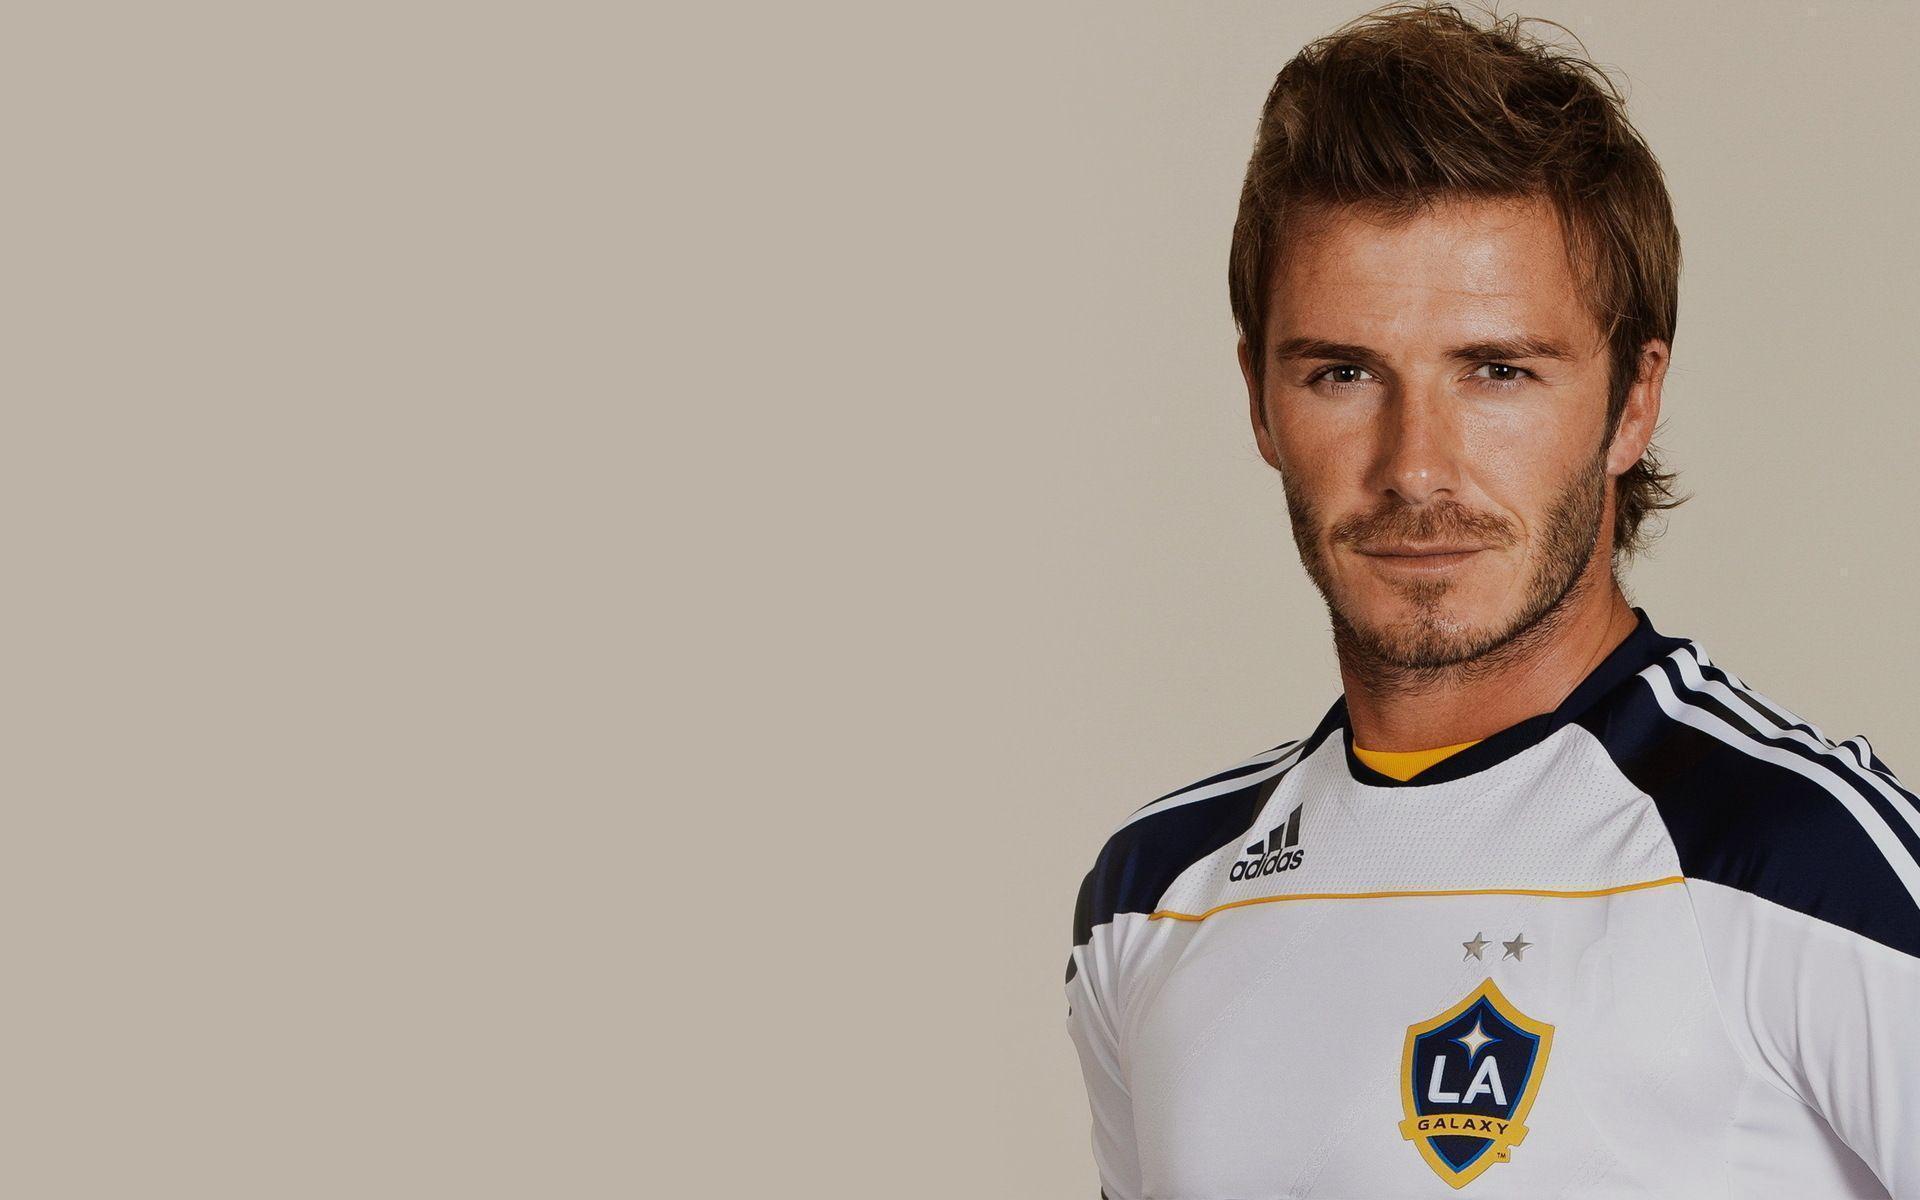 Wallpaper For > David Beckham Soccer Wallpaper Galaxy